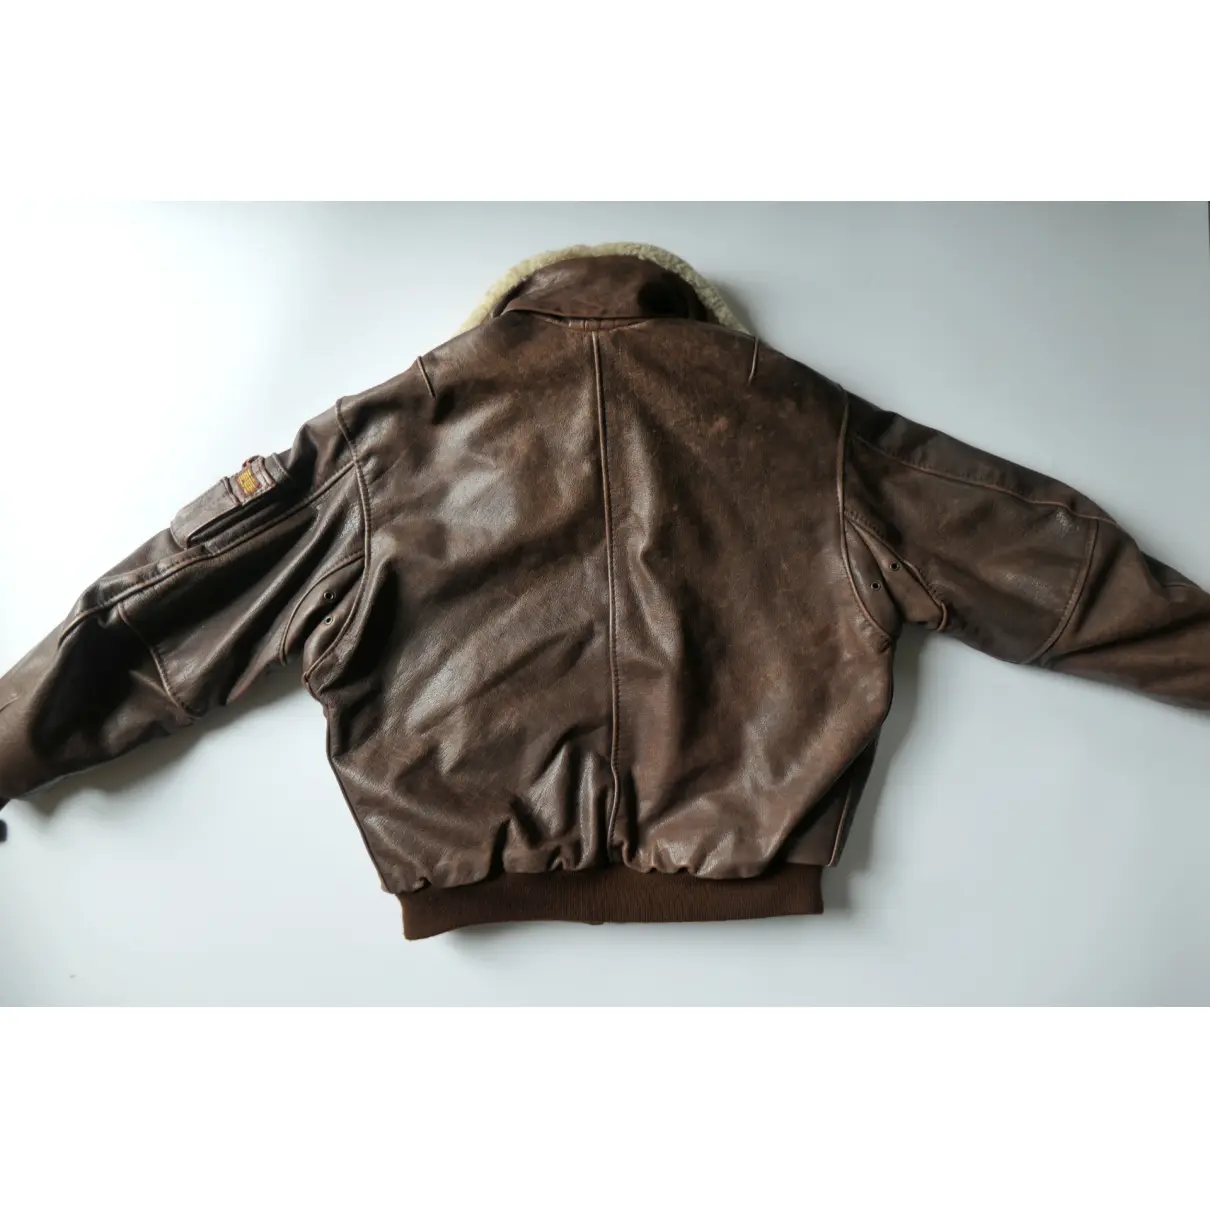 Leather jacket REDSKINS